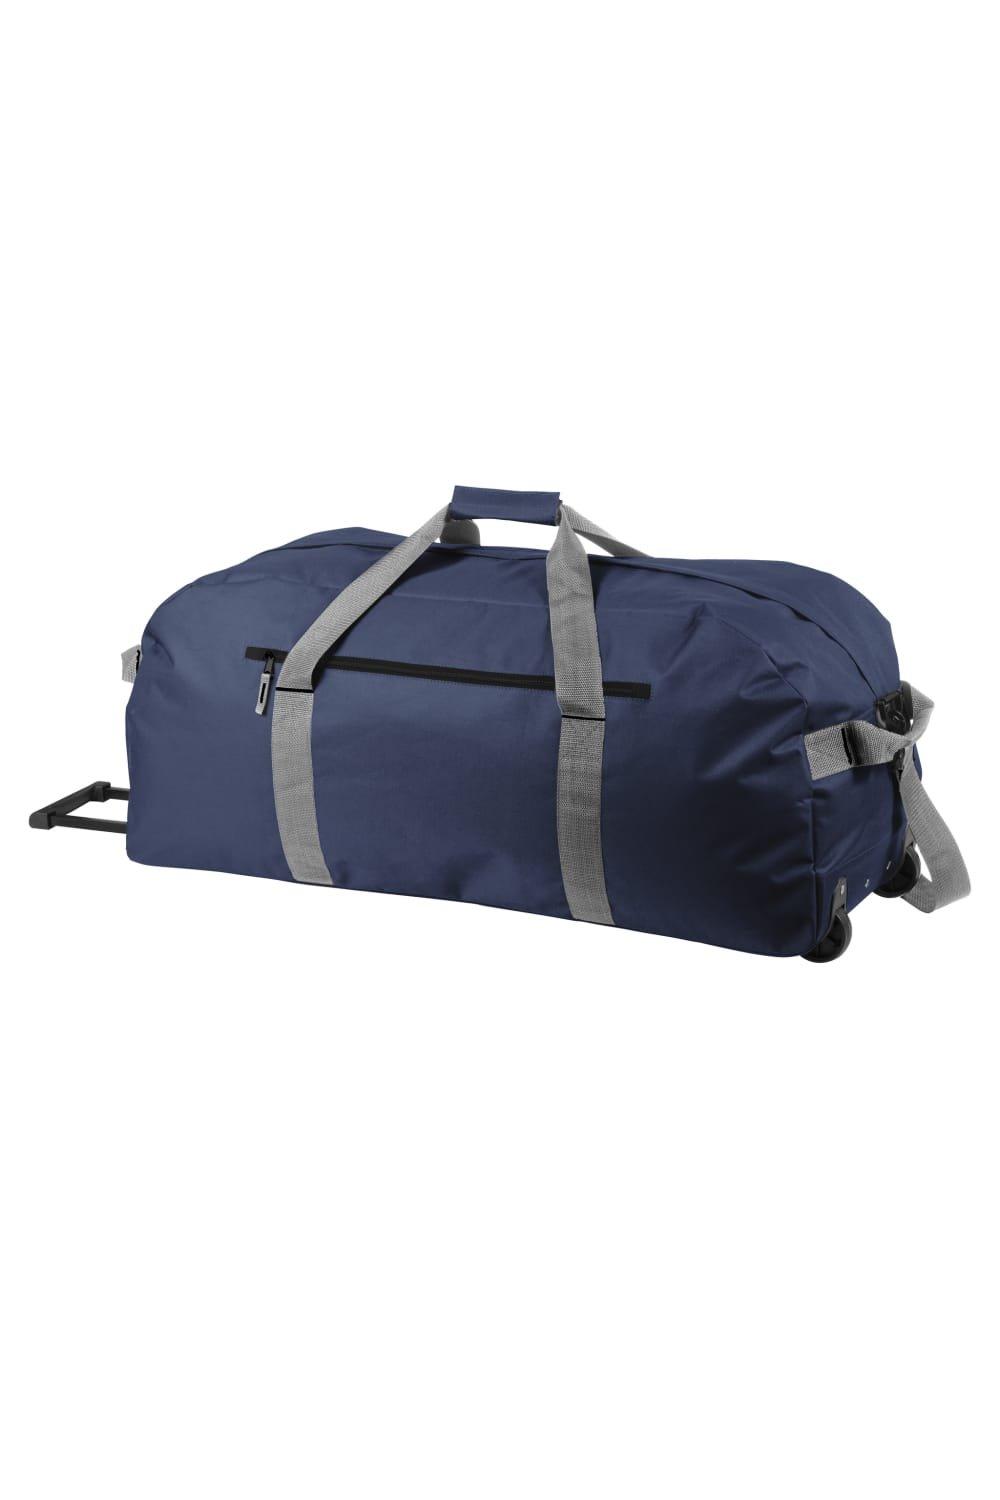 Дорожная сумка Vancouver Trolley Bullet, темно-синий сумка дорожная 20 л бирюзовый